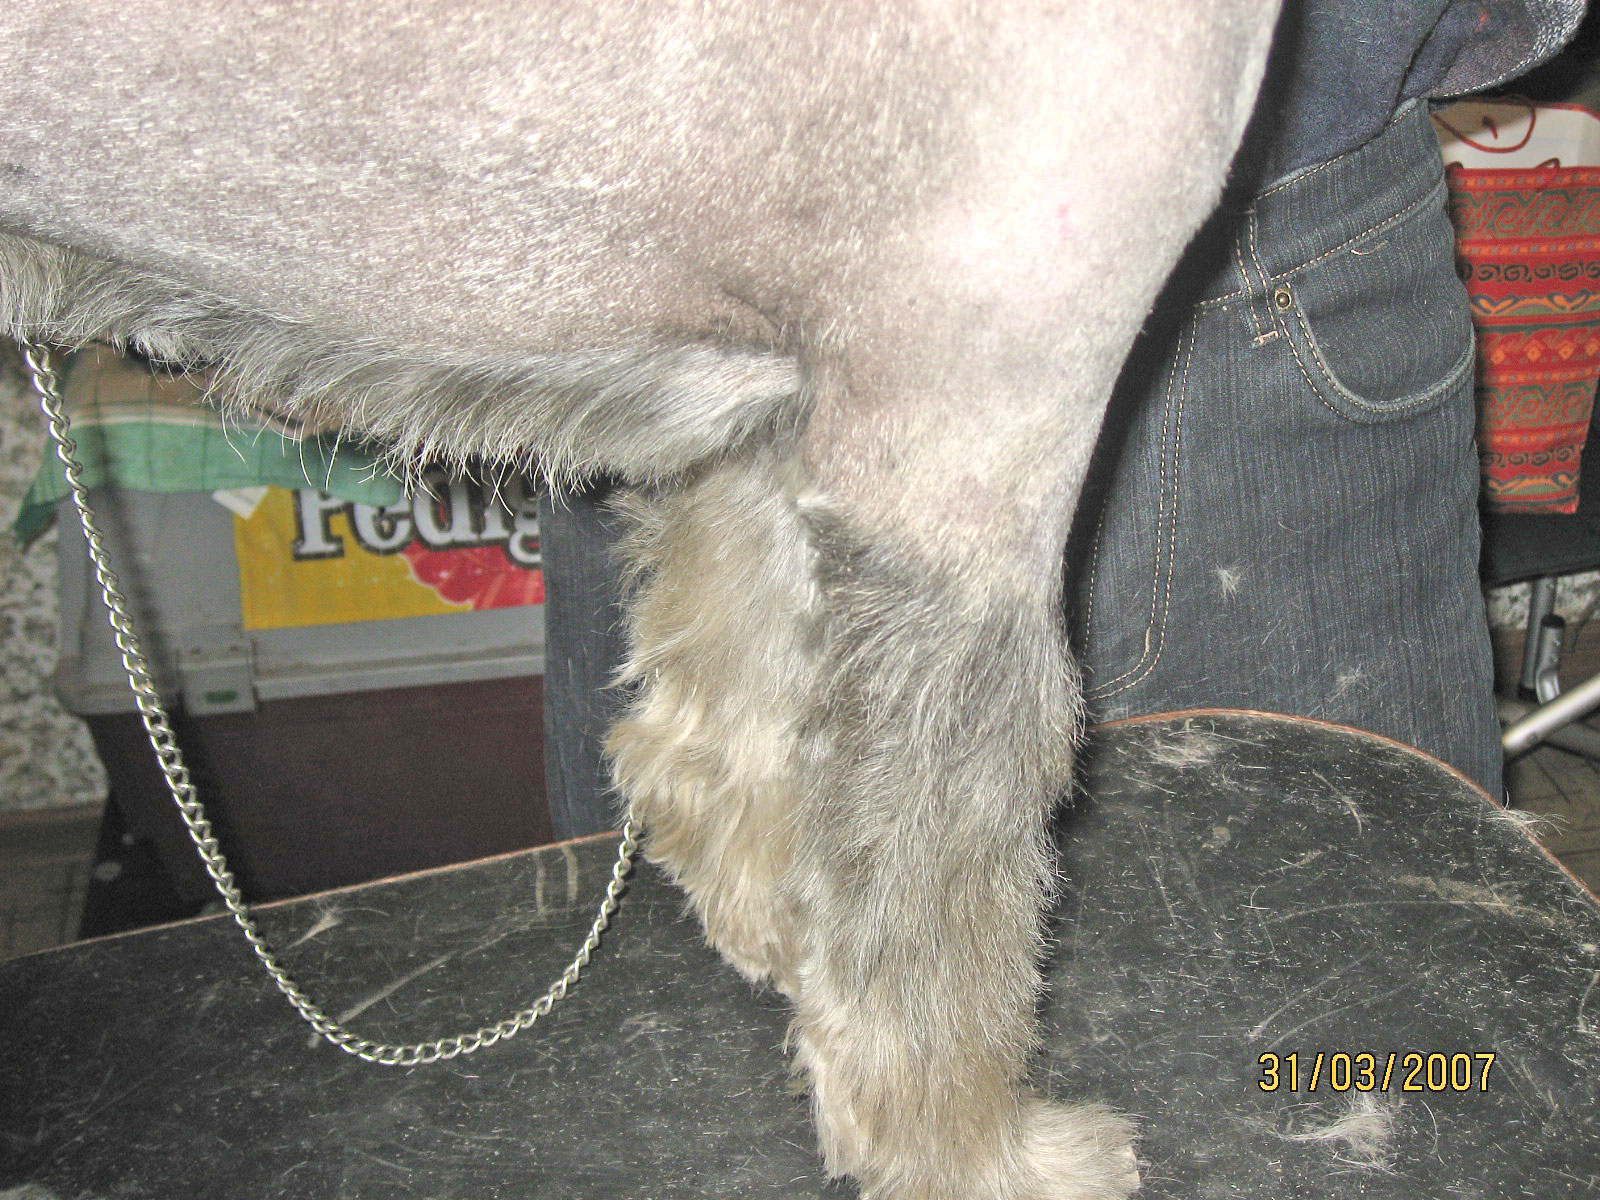 После тримминга желтеет шерсть у белой собаки: почему и что делать